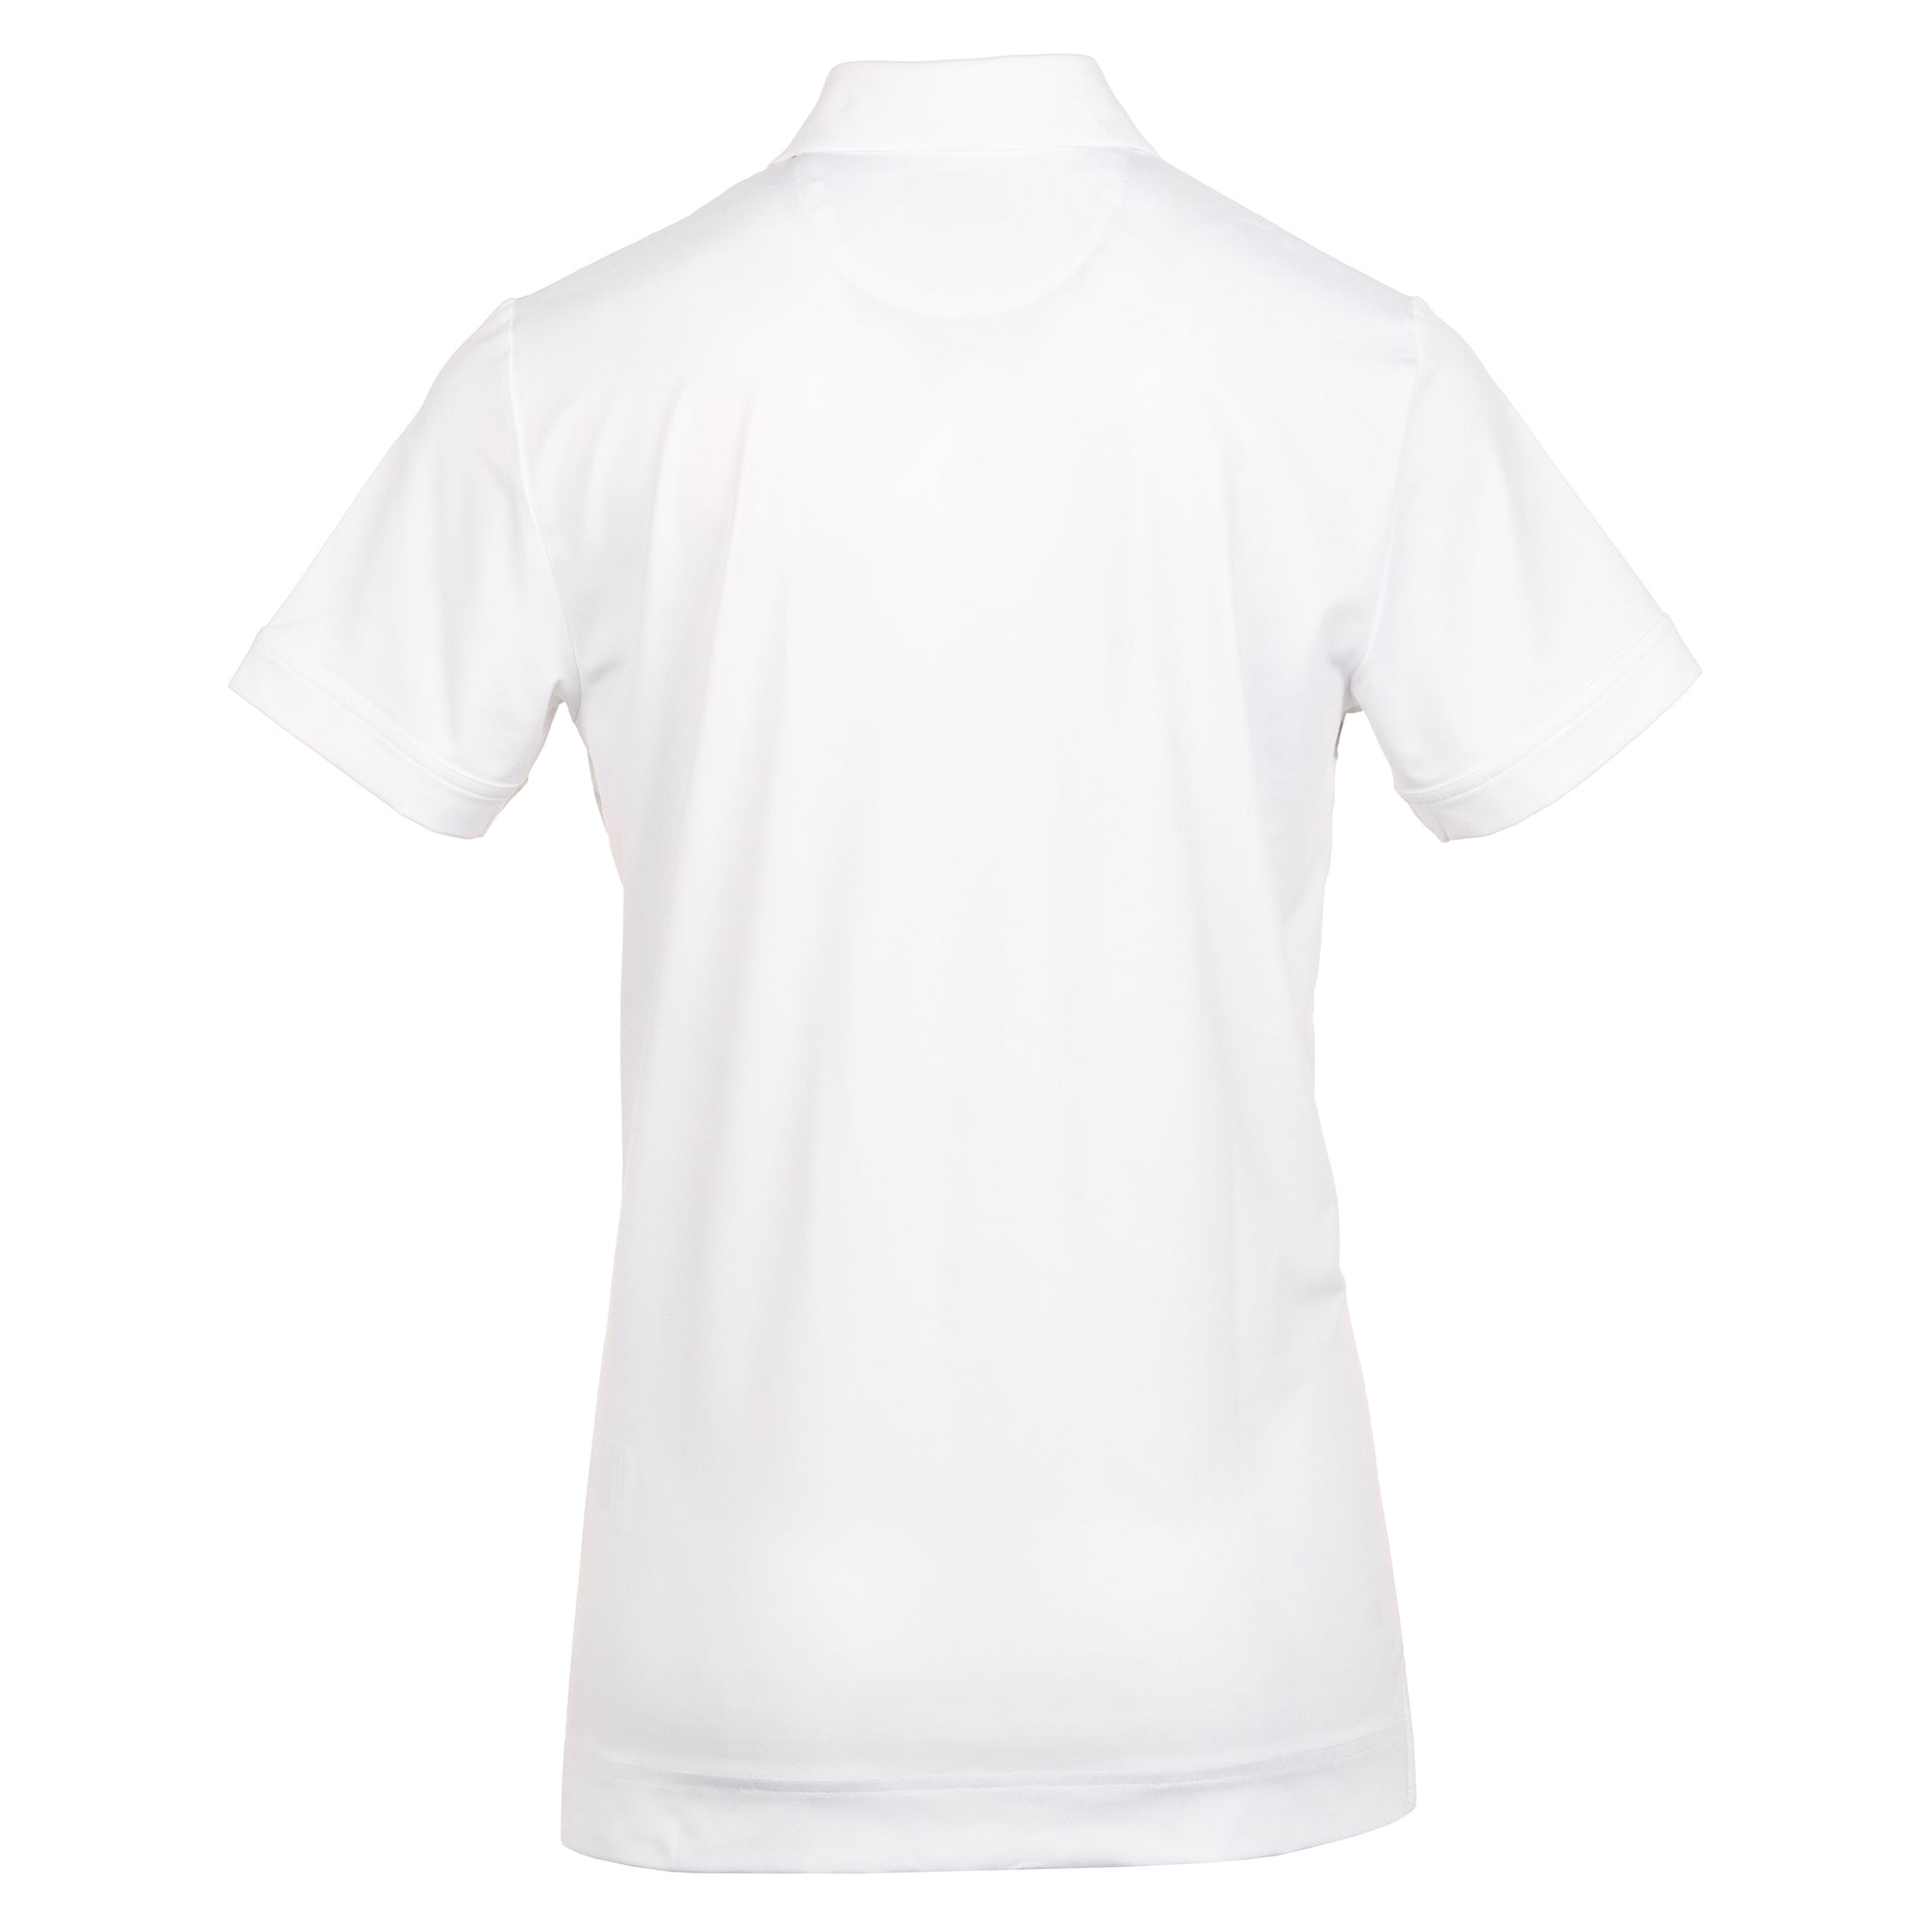 Callaway Golf X-Series Ombre 3D Chev Geo Shirt